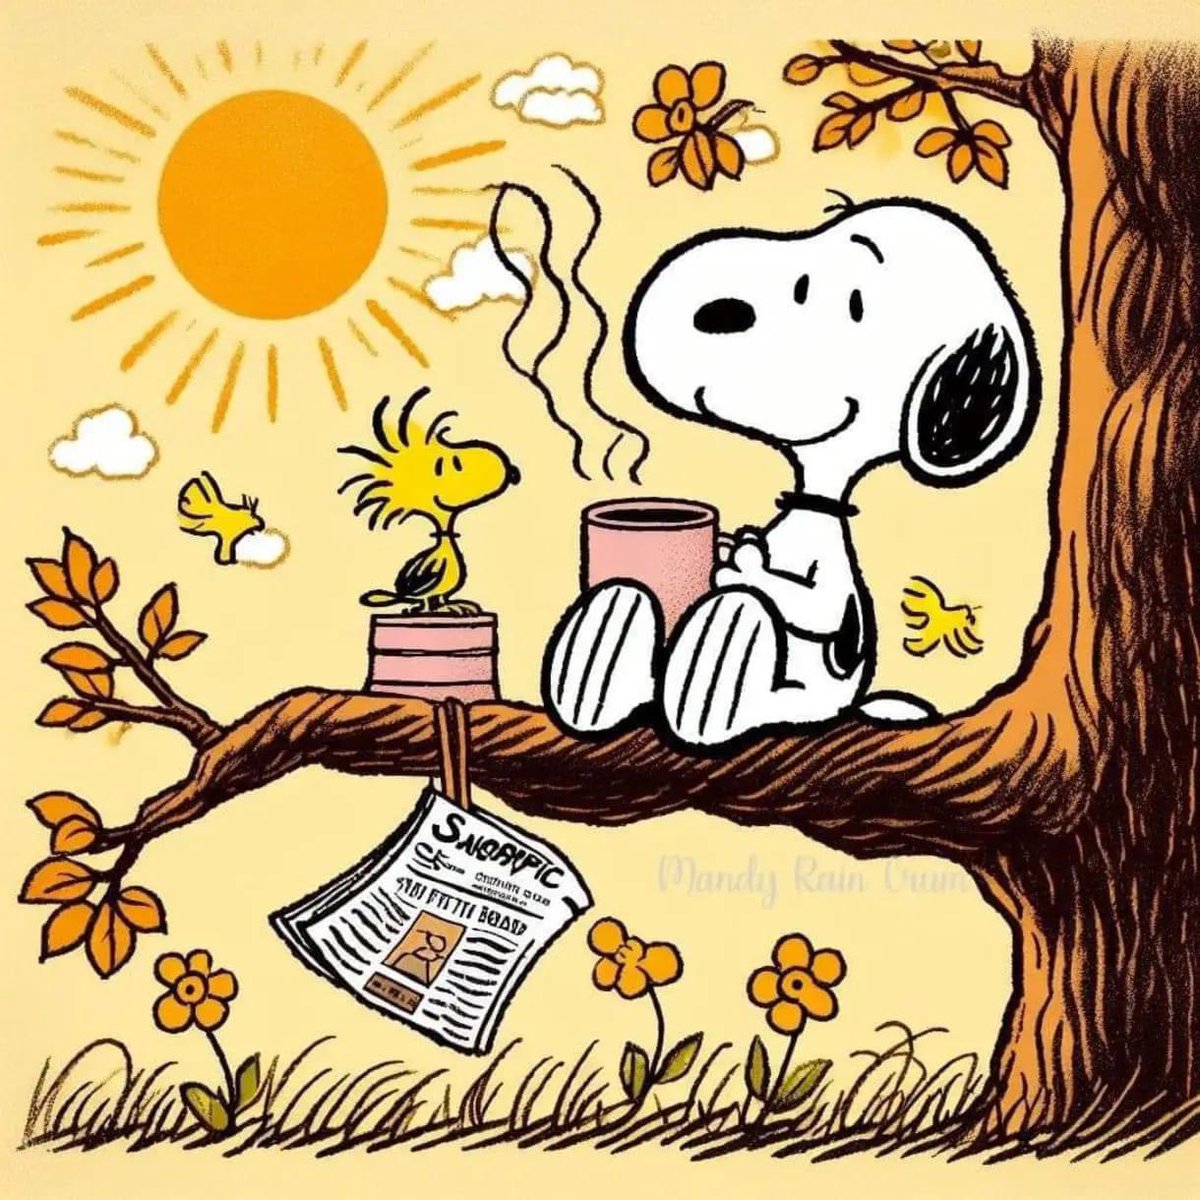 Liebe Gemeinde👆! Ich wünsche euch allen einen wunderschönen Samstag und ein sonniges, erholsames Wochenende 👍🥳🤩🍻🙋‍♂️! #Wochenende #Peanuts